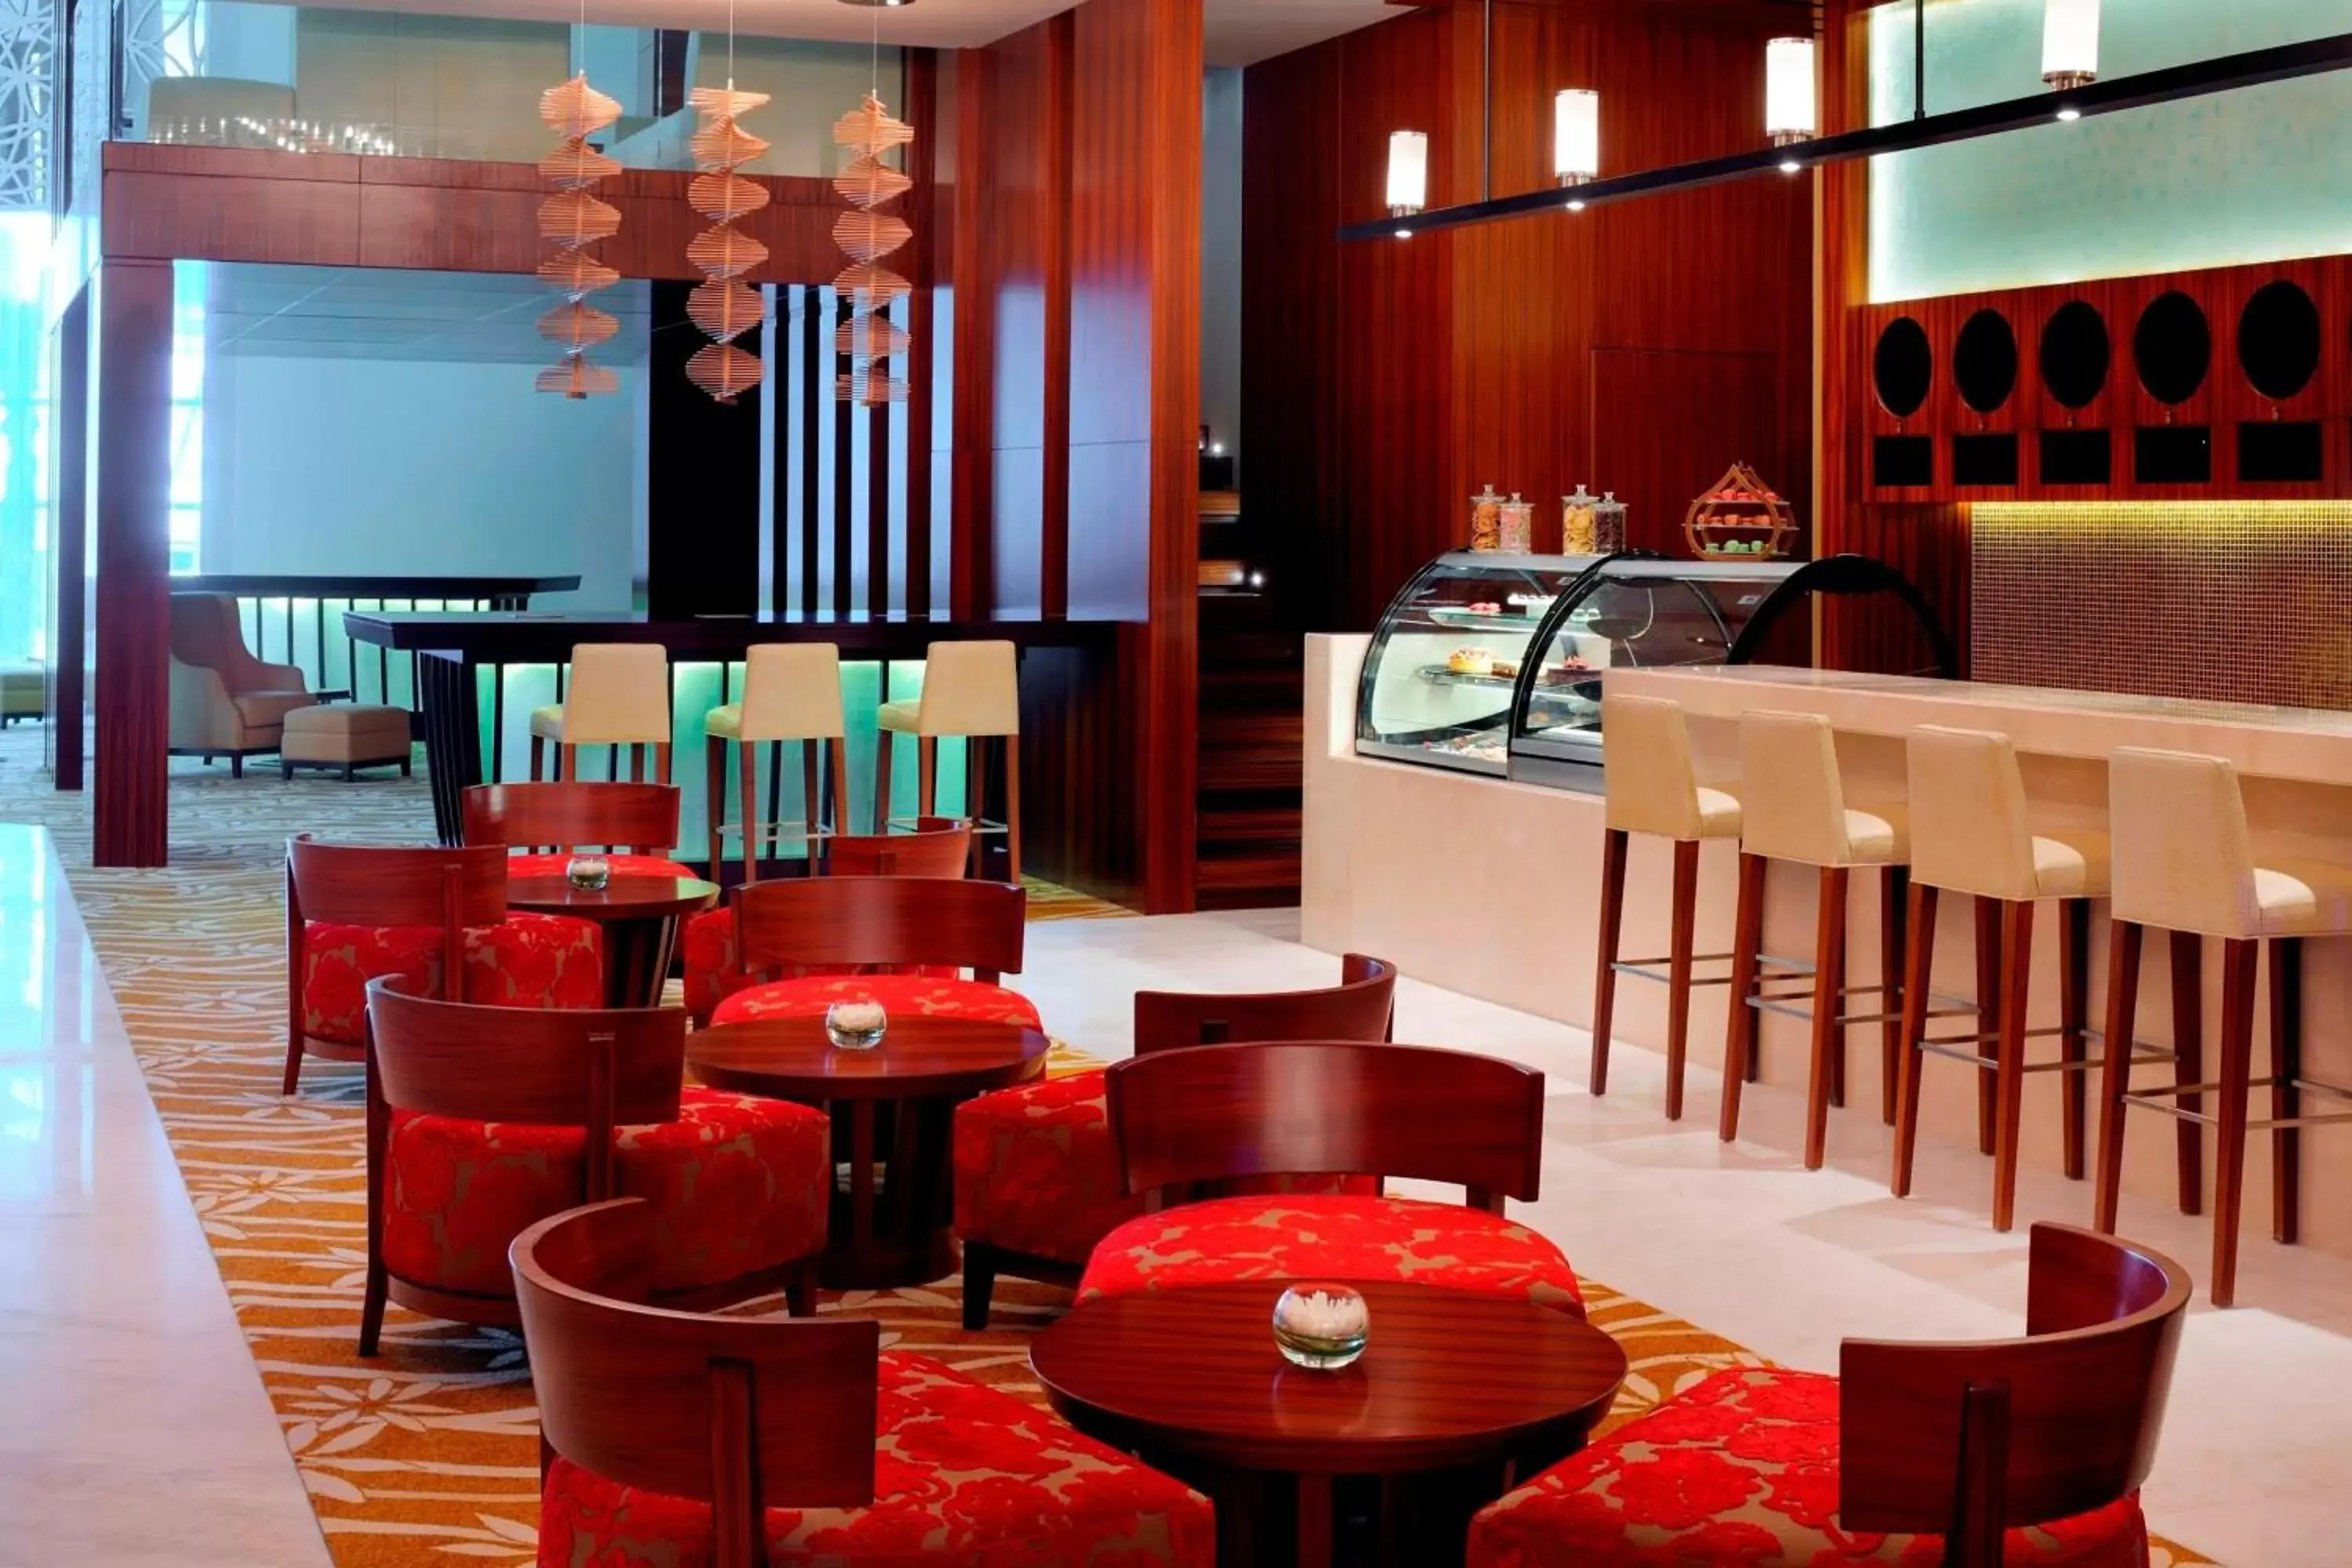 Lobby or reception, Lounge/Bar in Marriott Hotel, Al Jaddaf, Dubai